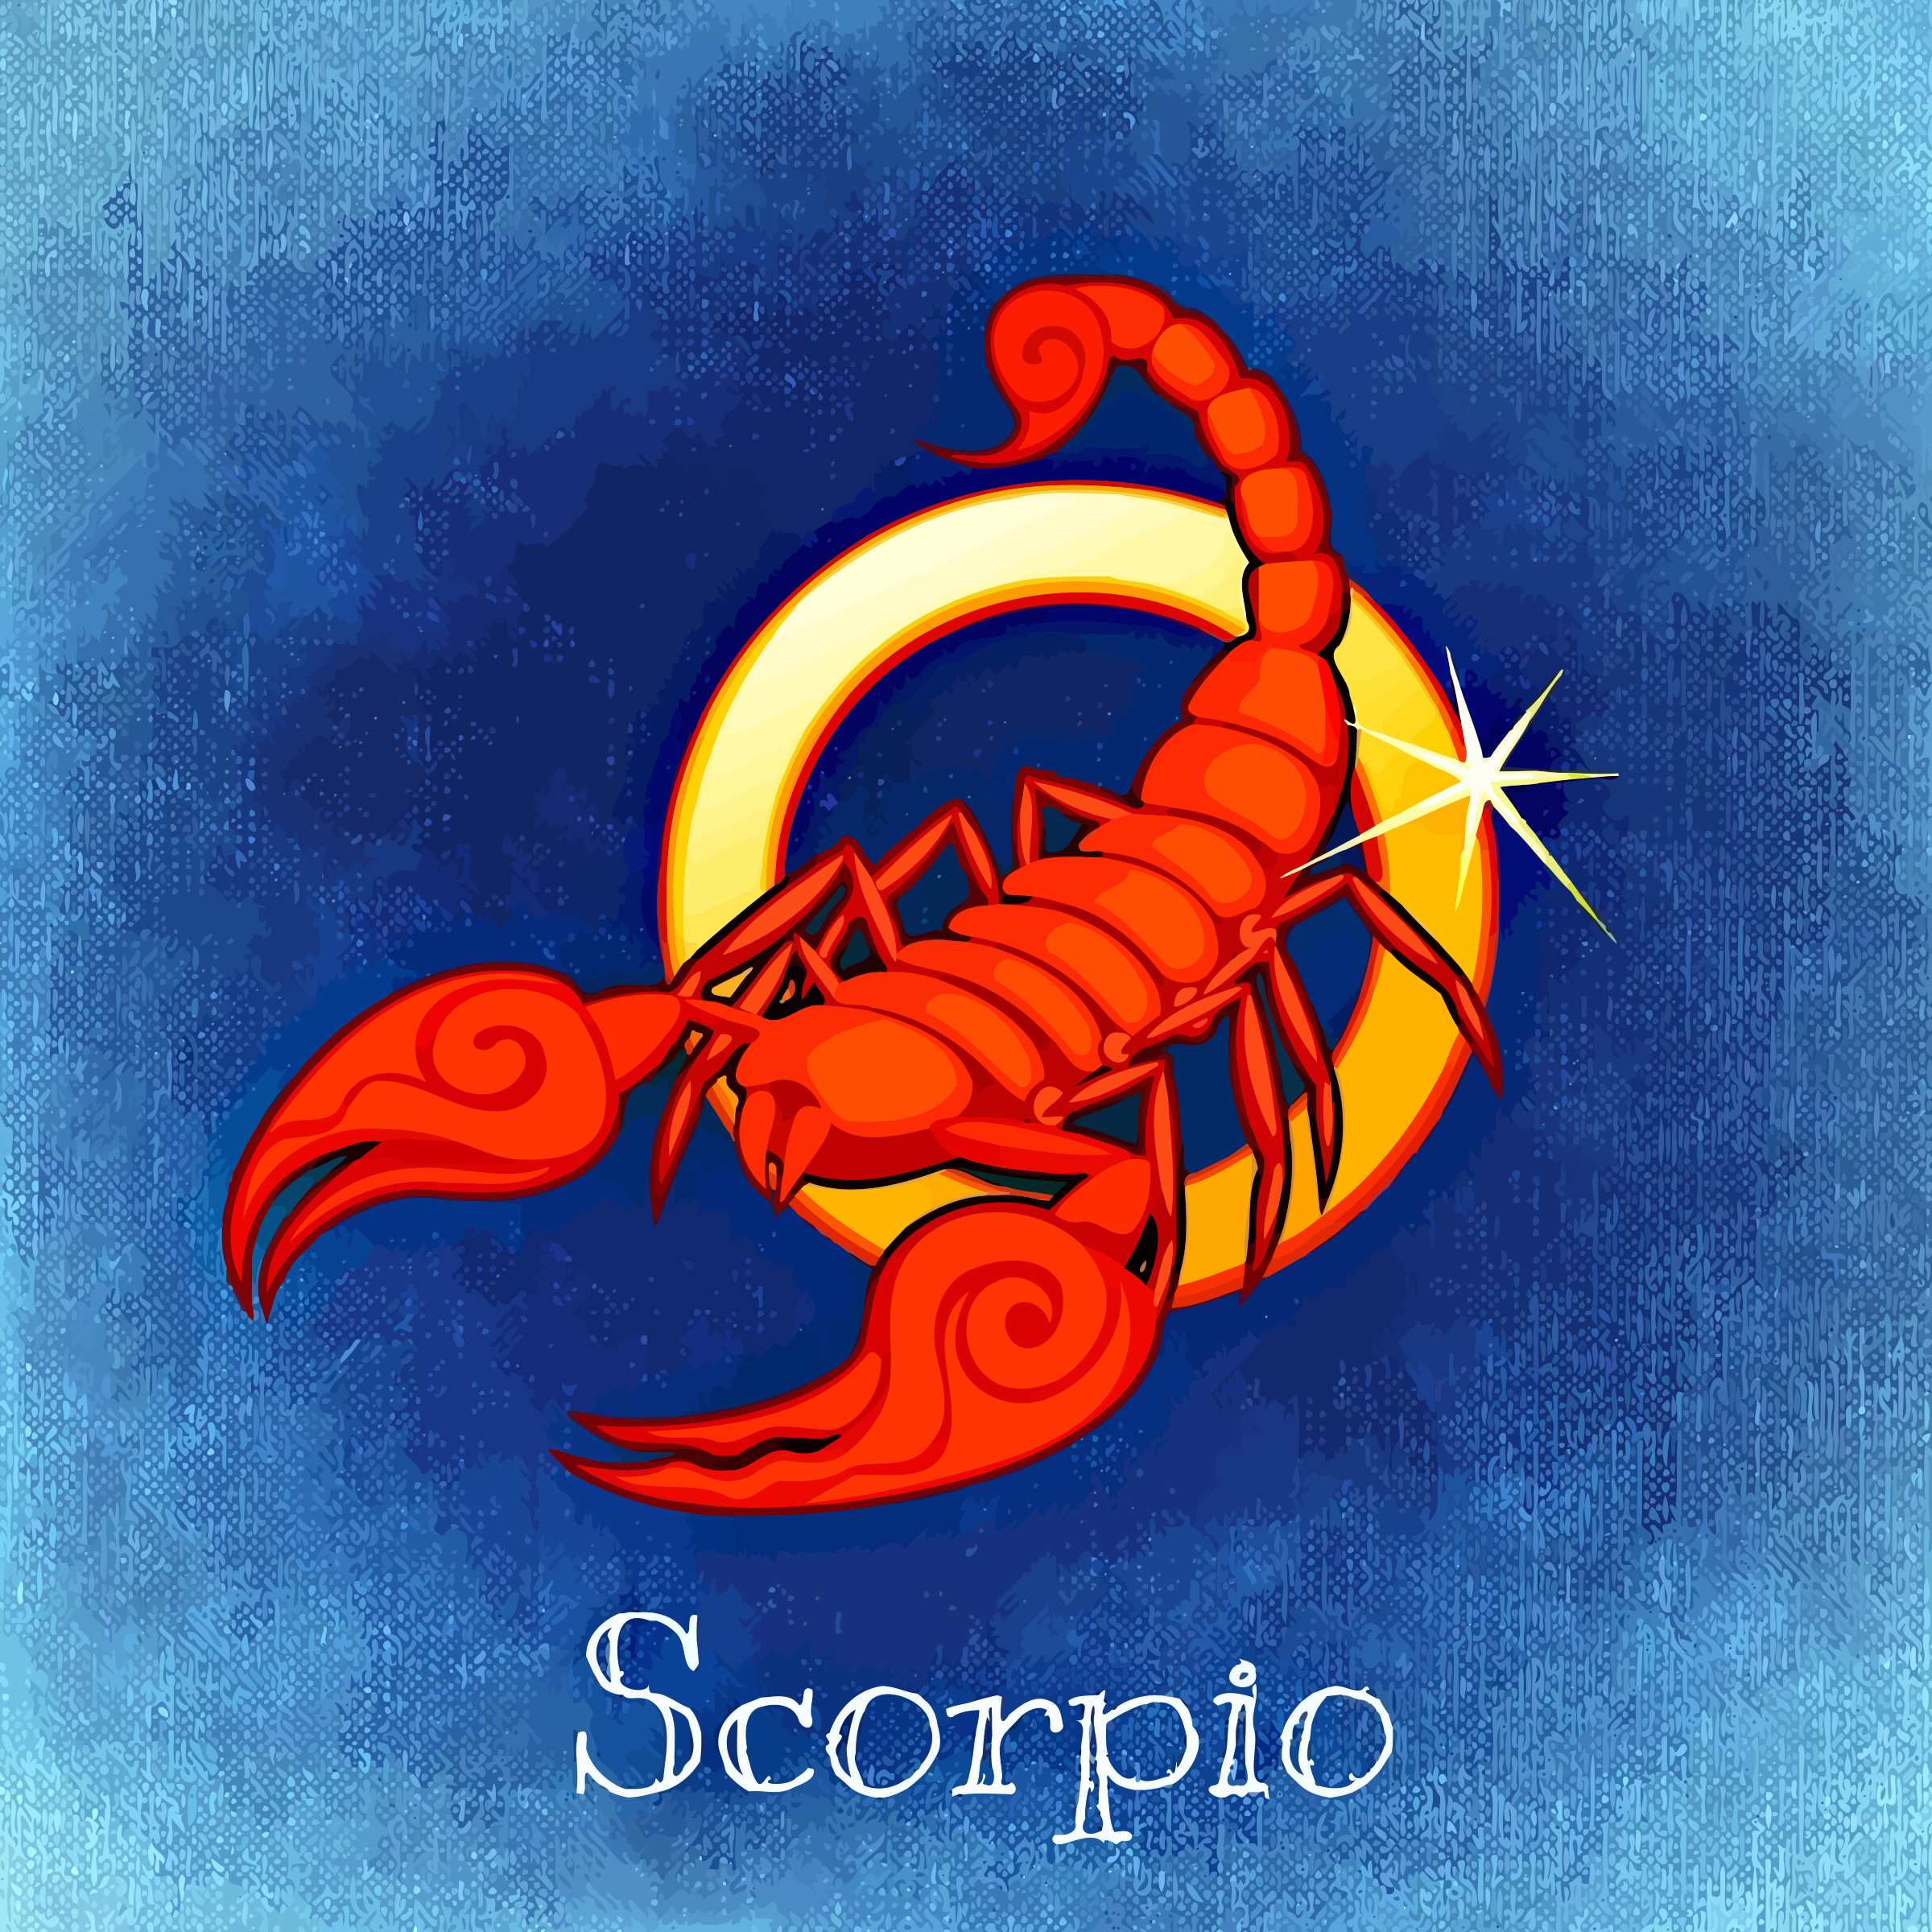 Гороскоп зодиака скорпион